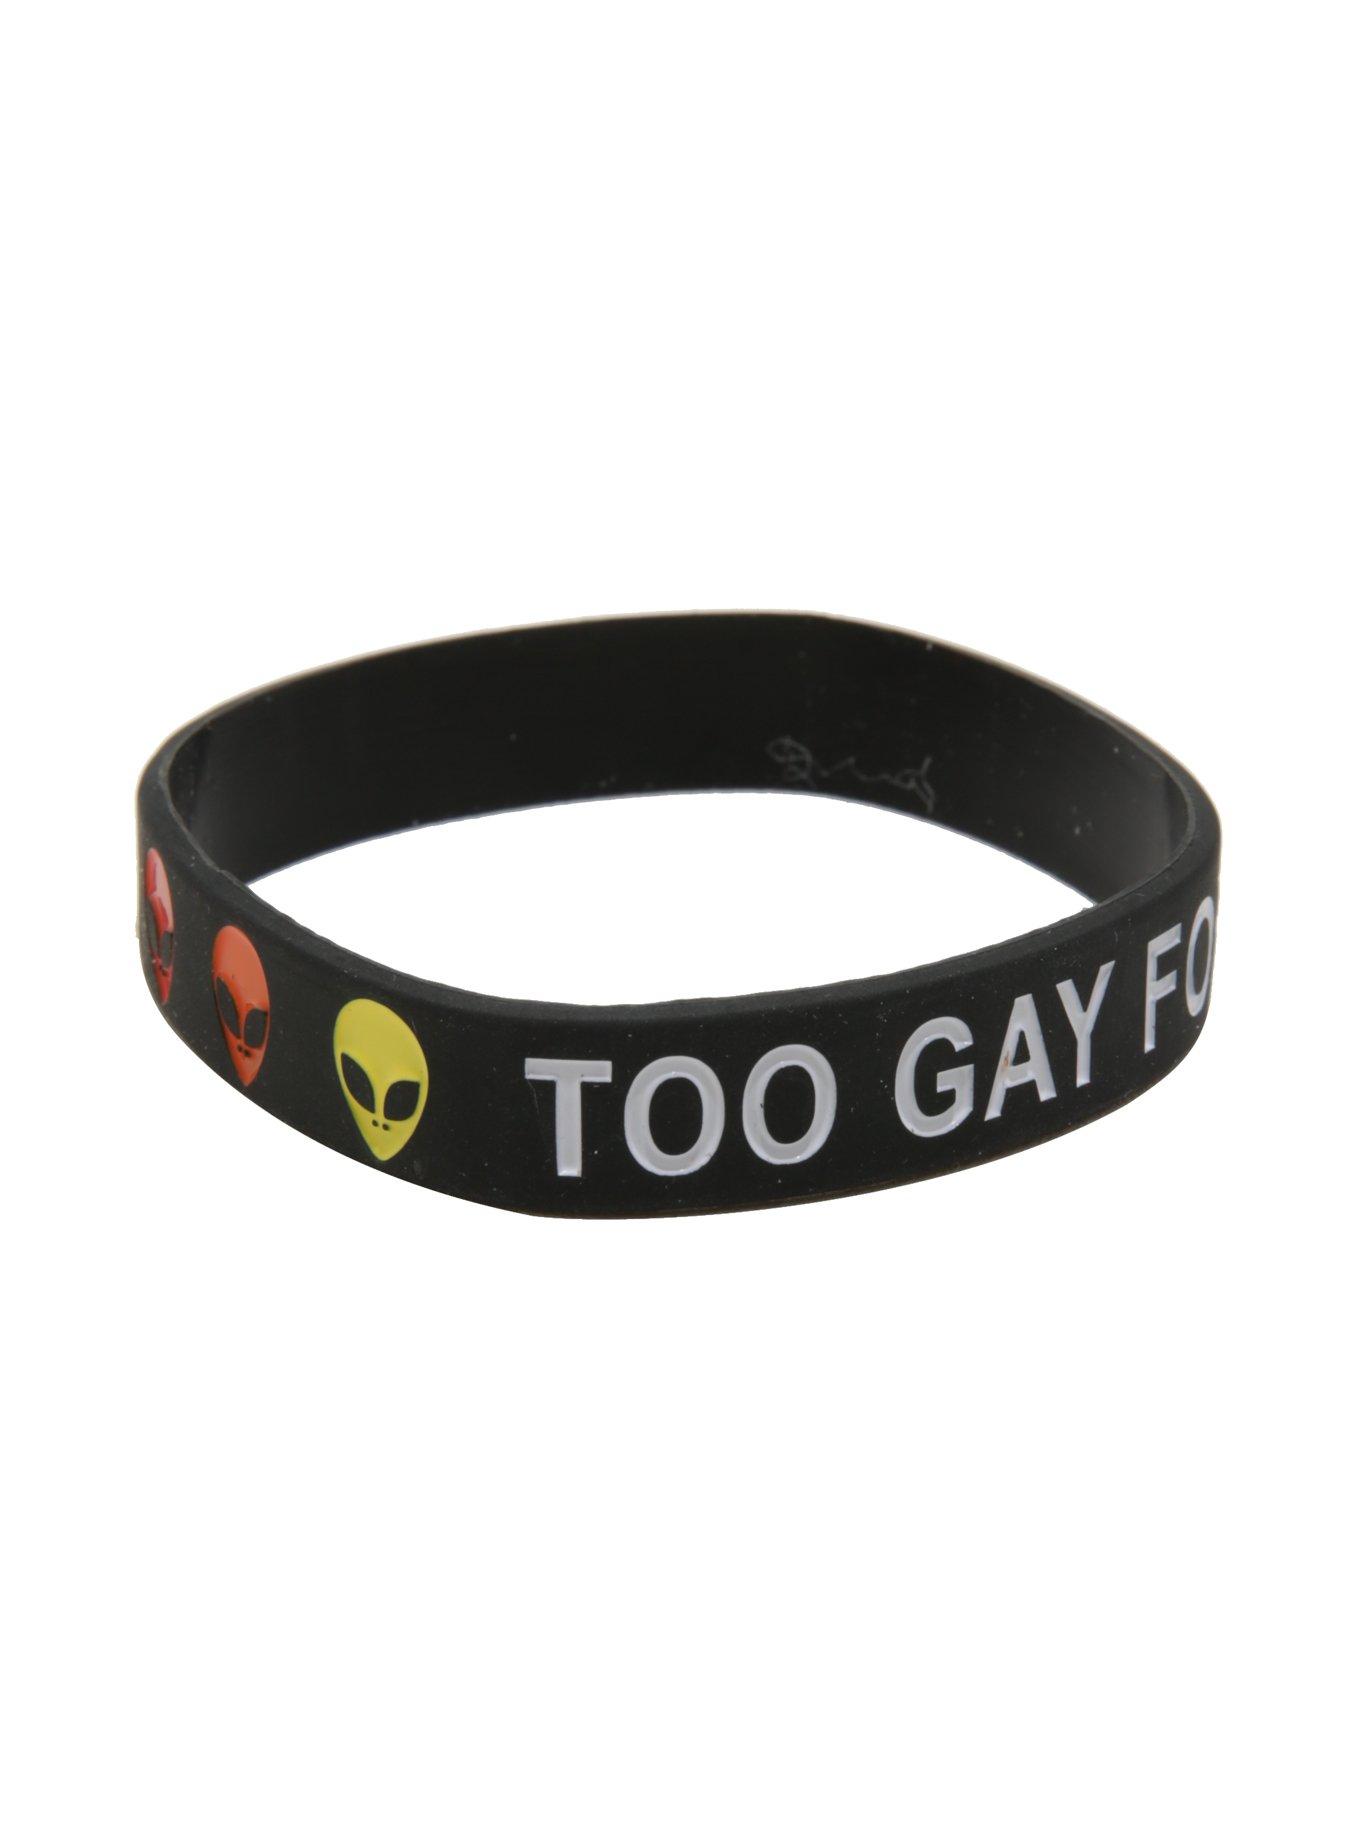 Too Gay For This World Alien Rubber Bracelet, , alternate